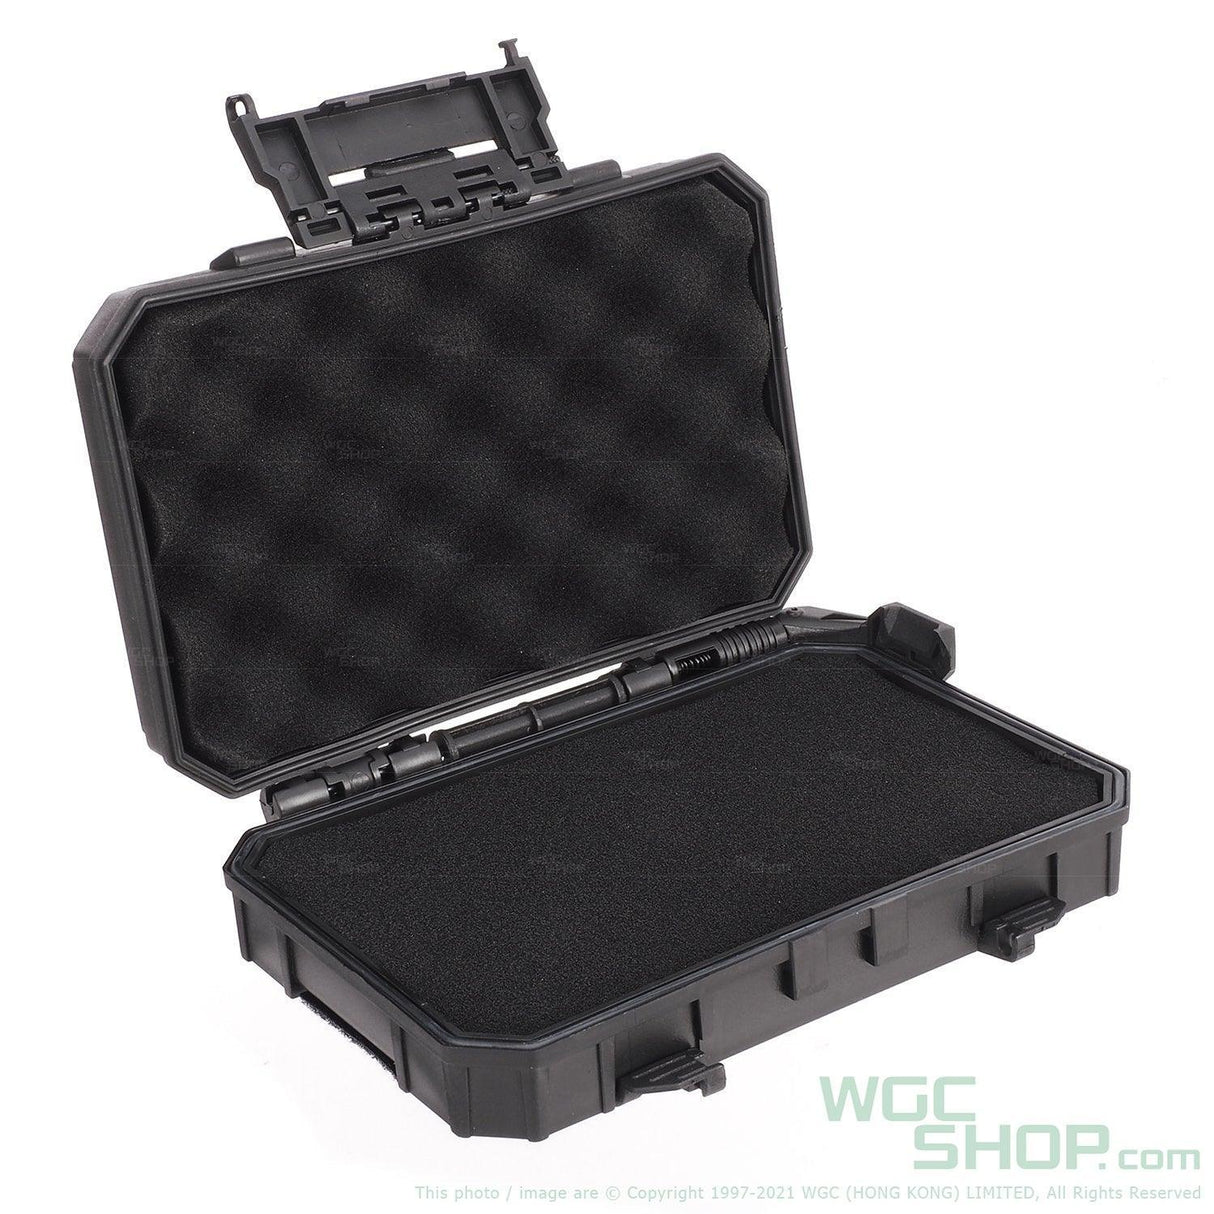 WOSPORT Tactical Gear Case - WGC Shop